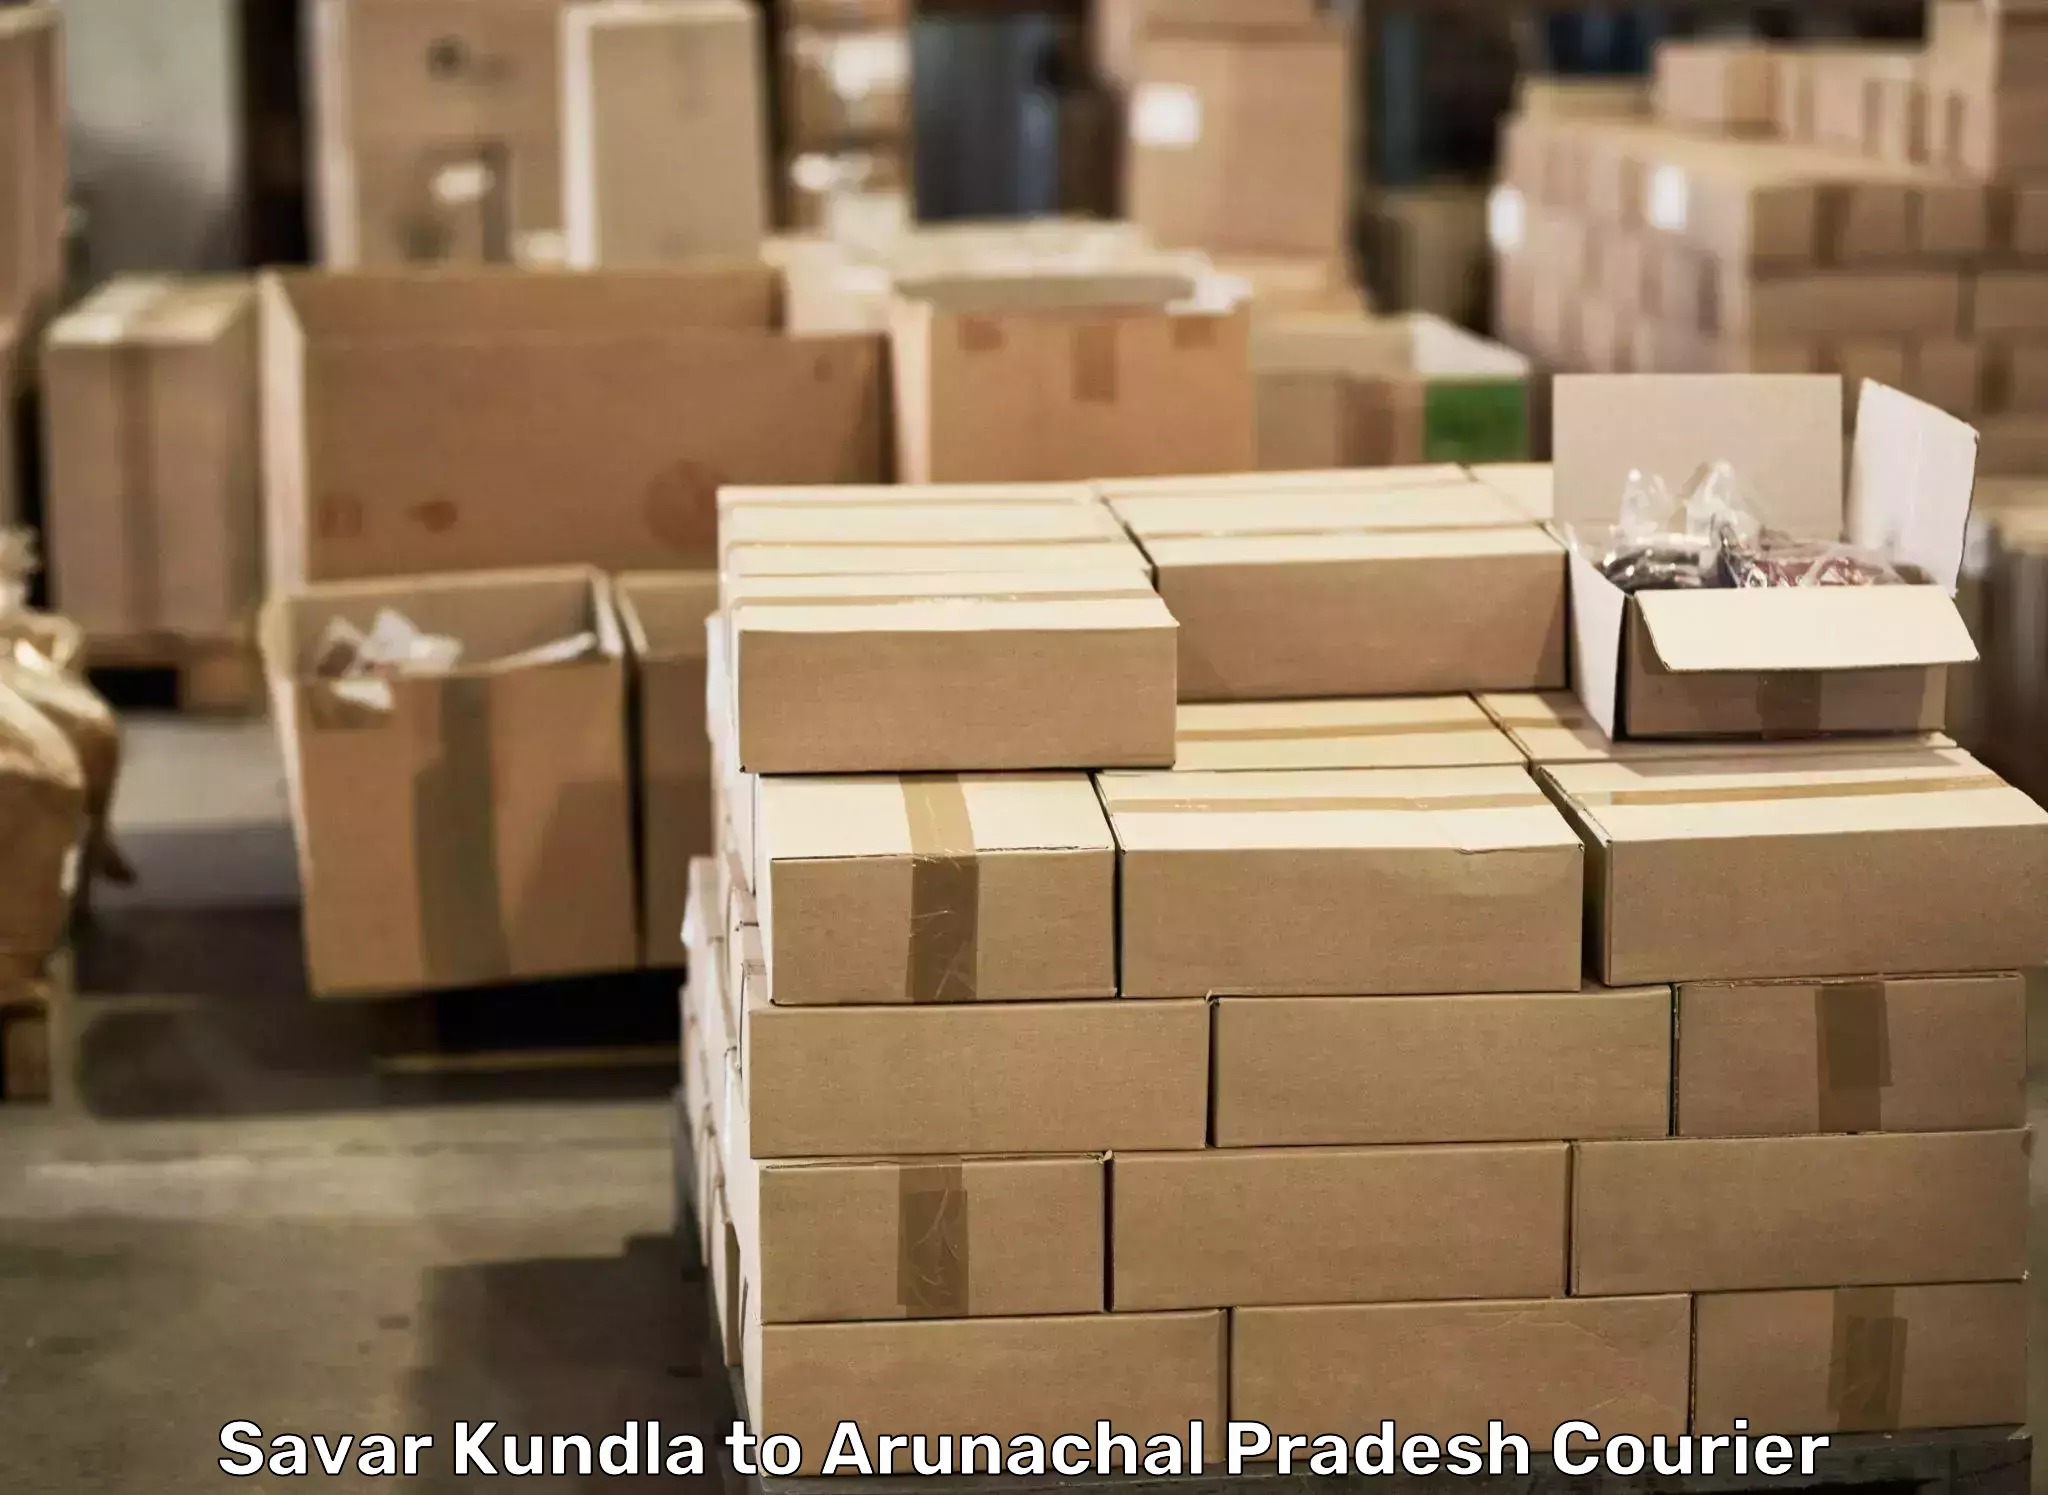 Furniture moving experts Savar Kundla to East Kameng